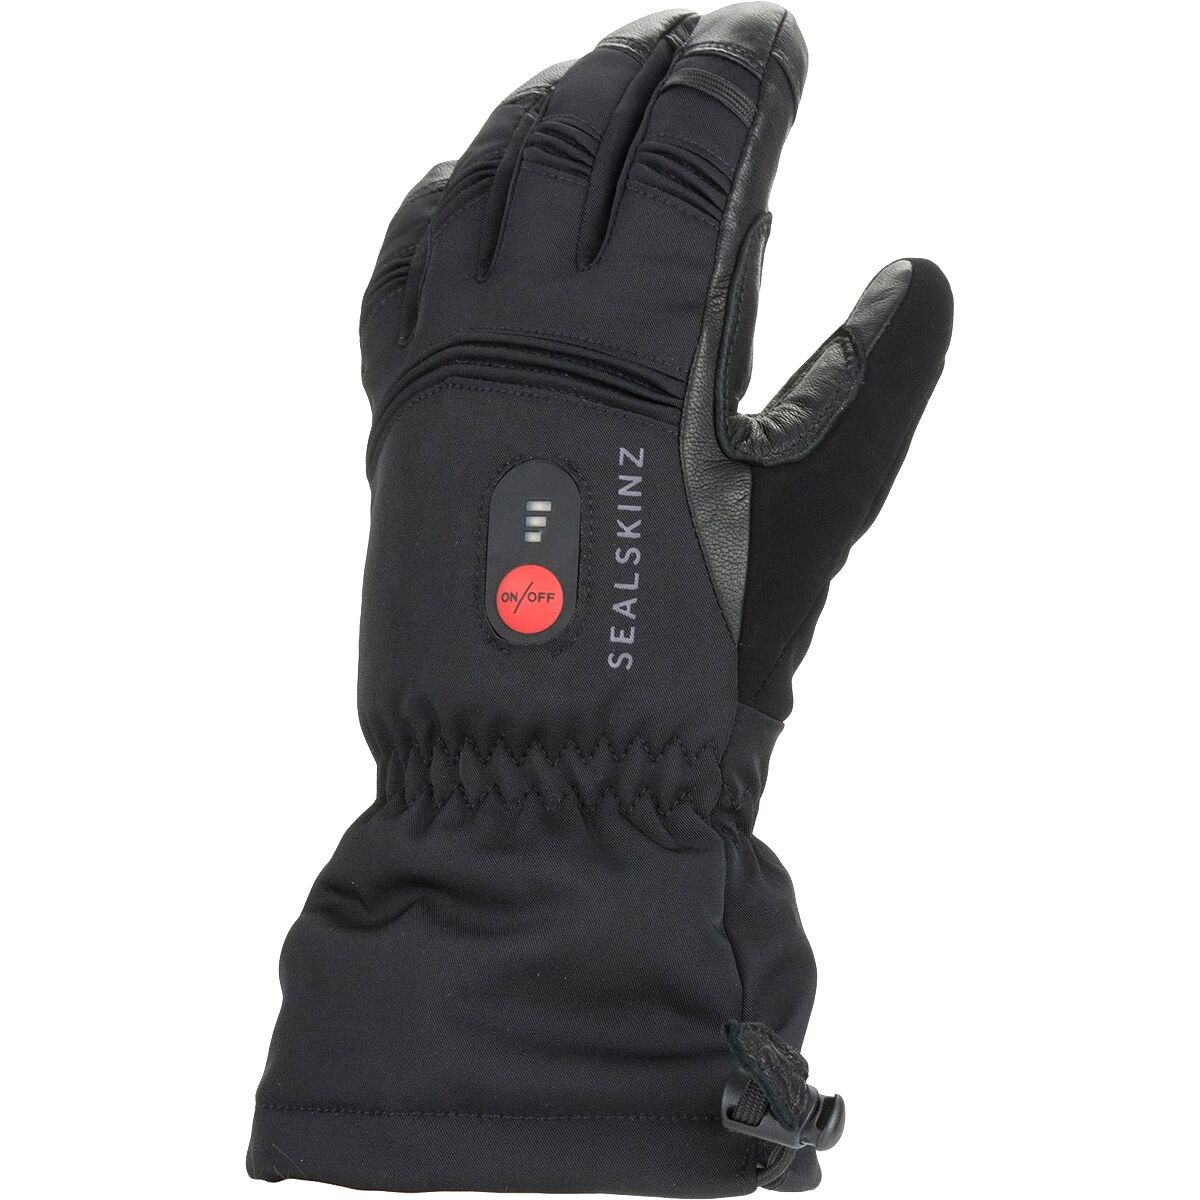 SealSkinz Waterproof Heated Gauntlet Glove